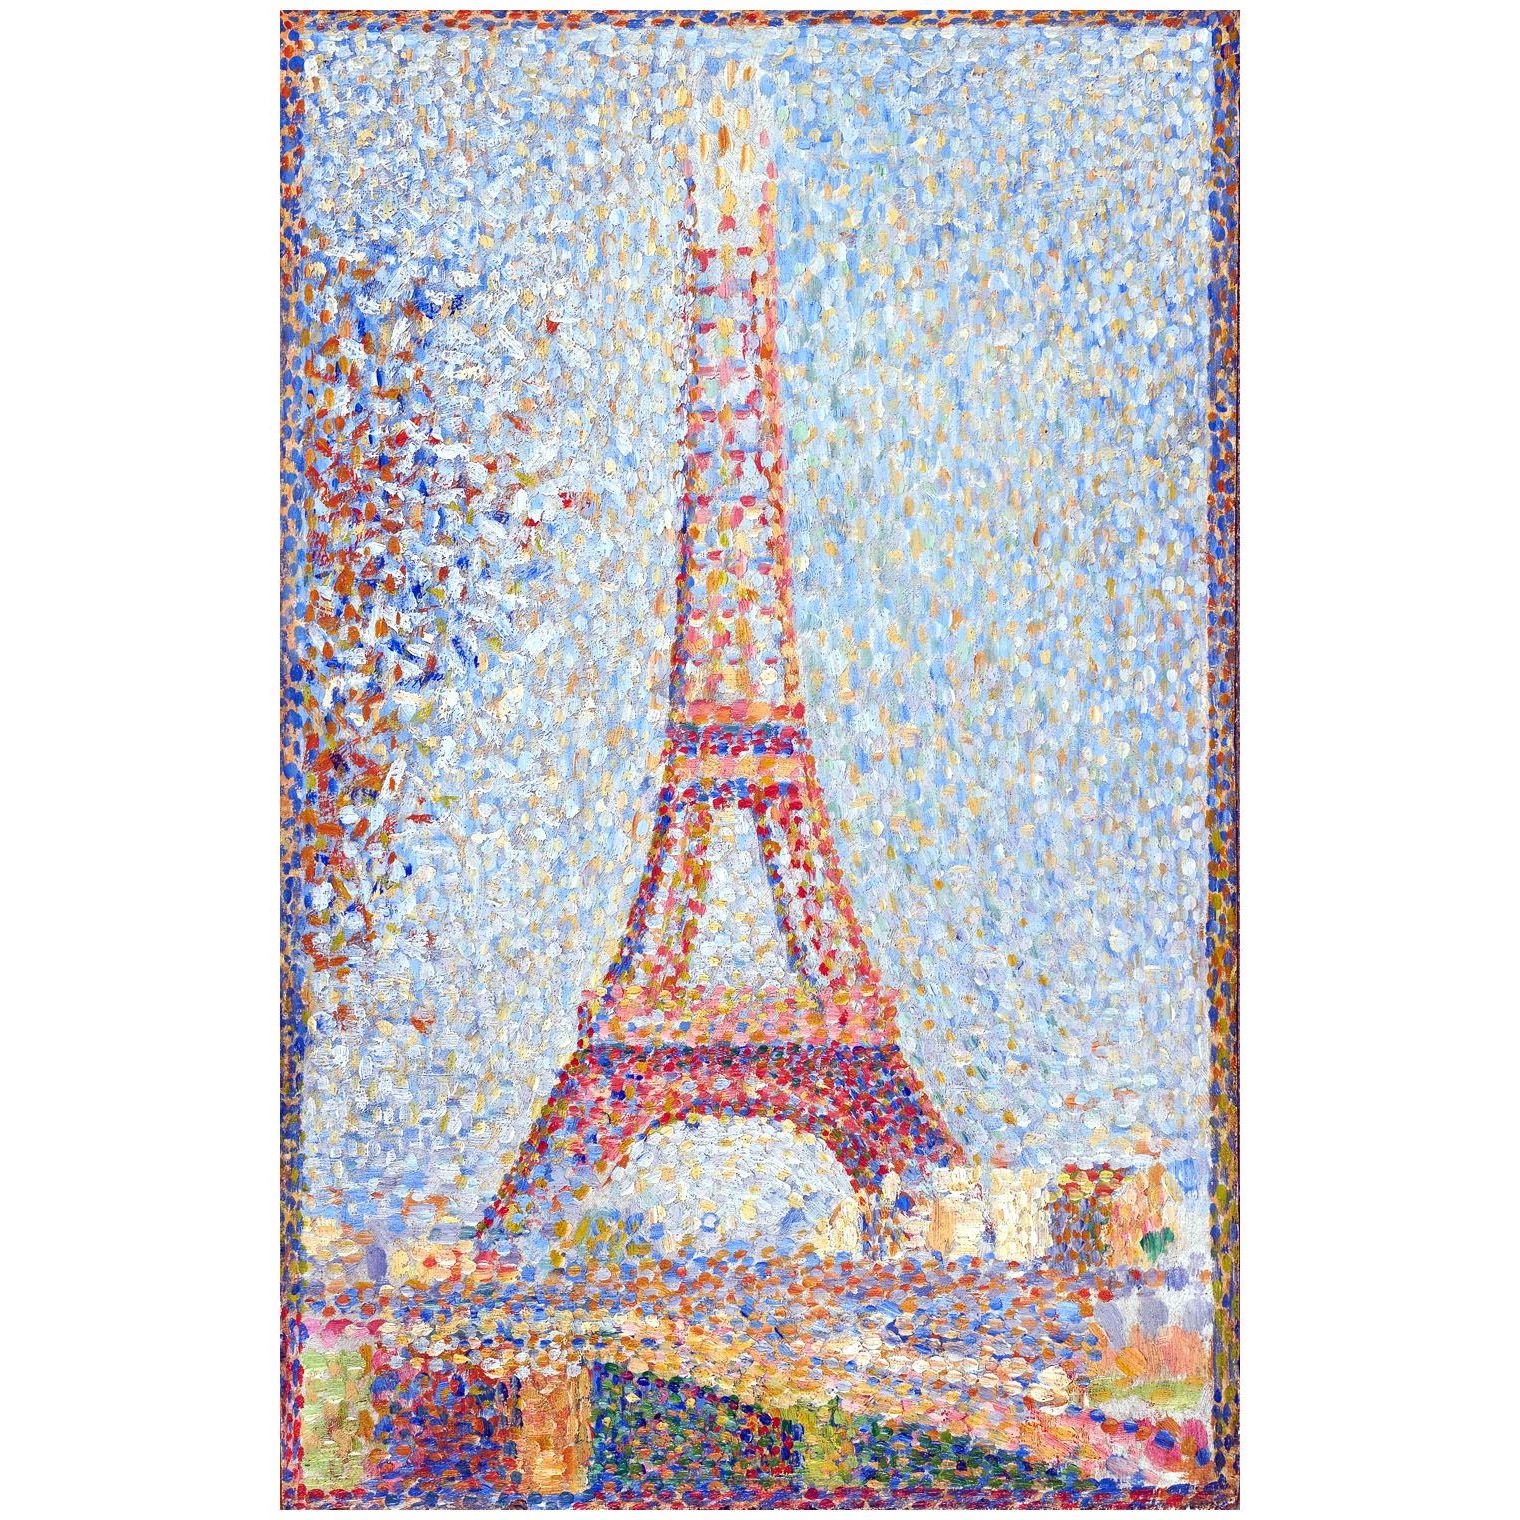 Georges Seurat. La tour d’Eiffel. 1889. Fine Arts Museum San Francisco